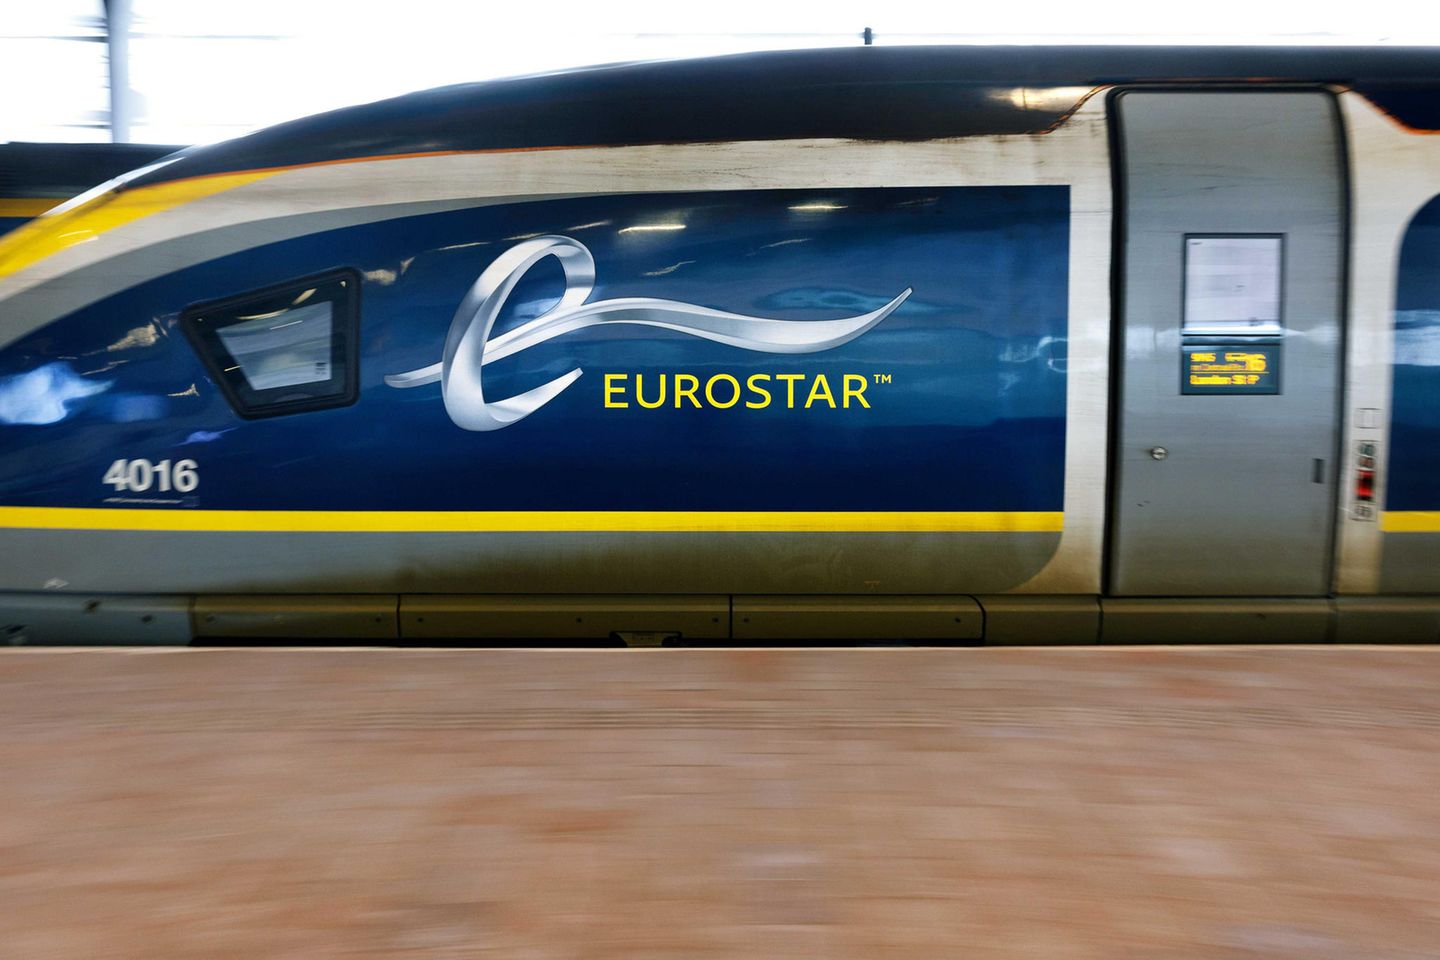 Das Bahnunternehmen Eurostar ist vor allem für seine Schnellzüge nach London bekannt und jetzt mit Thalys fusioniert